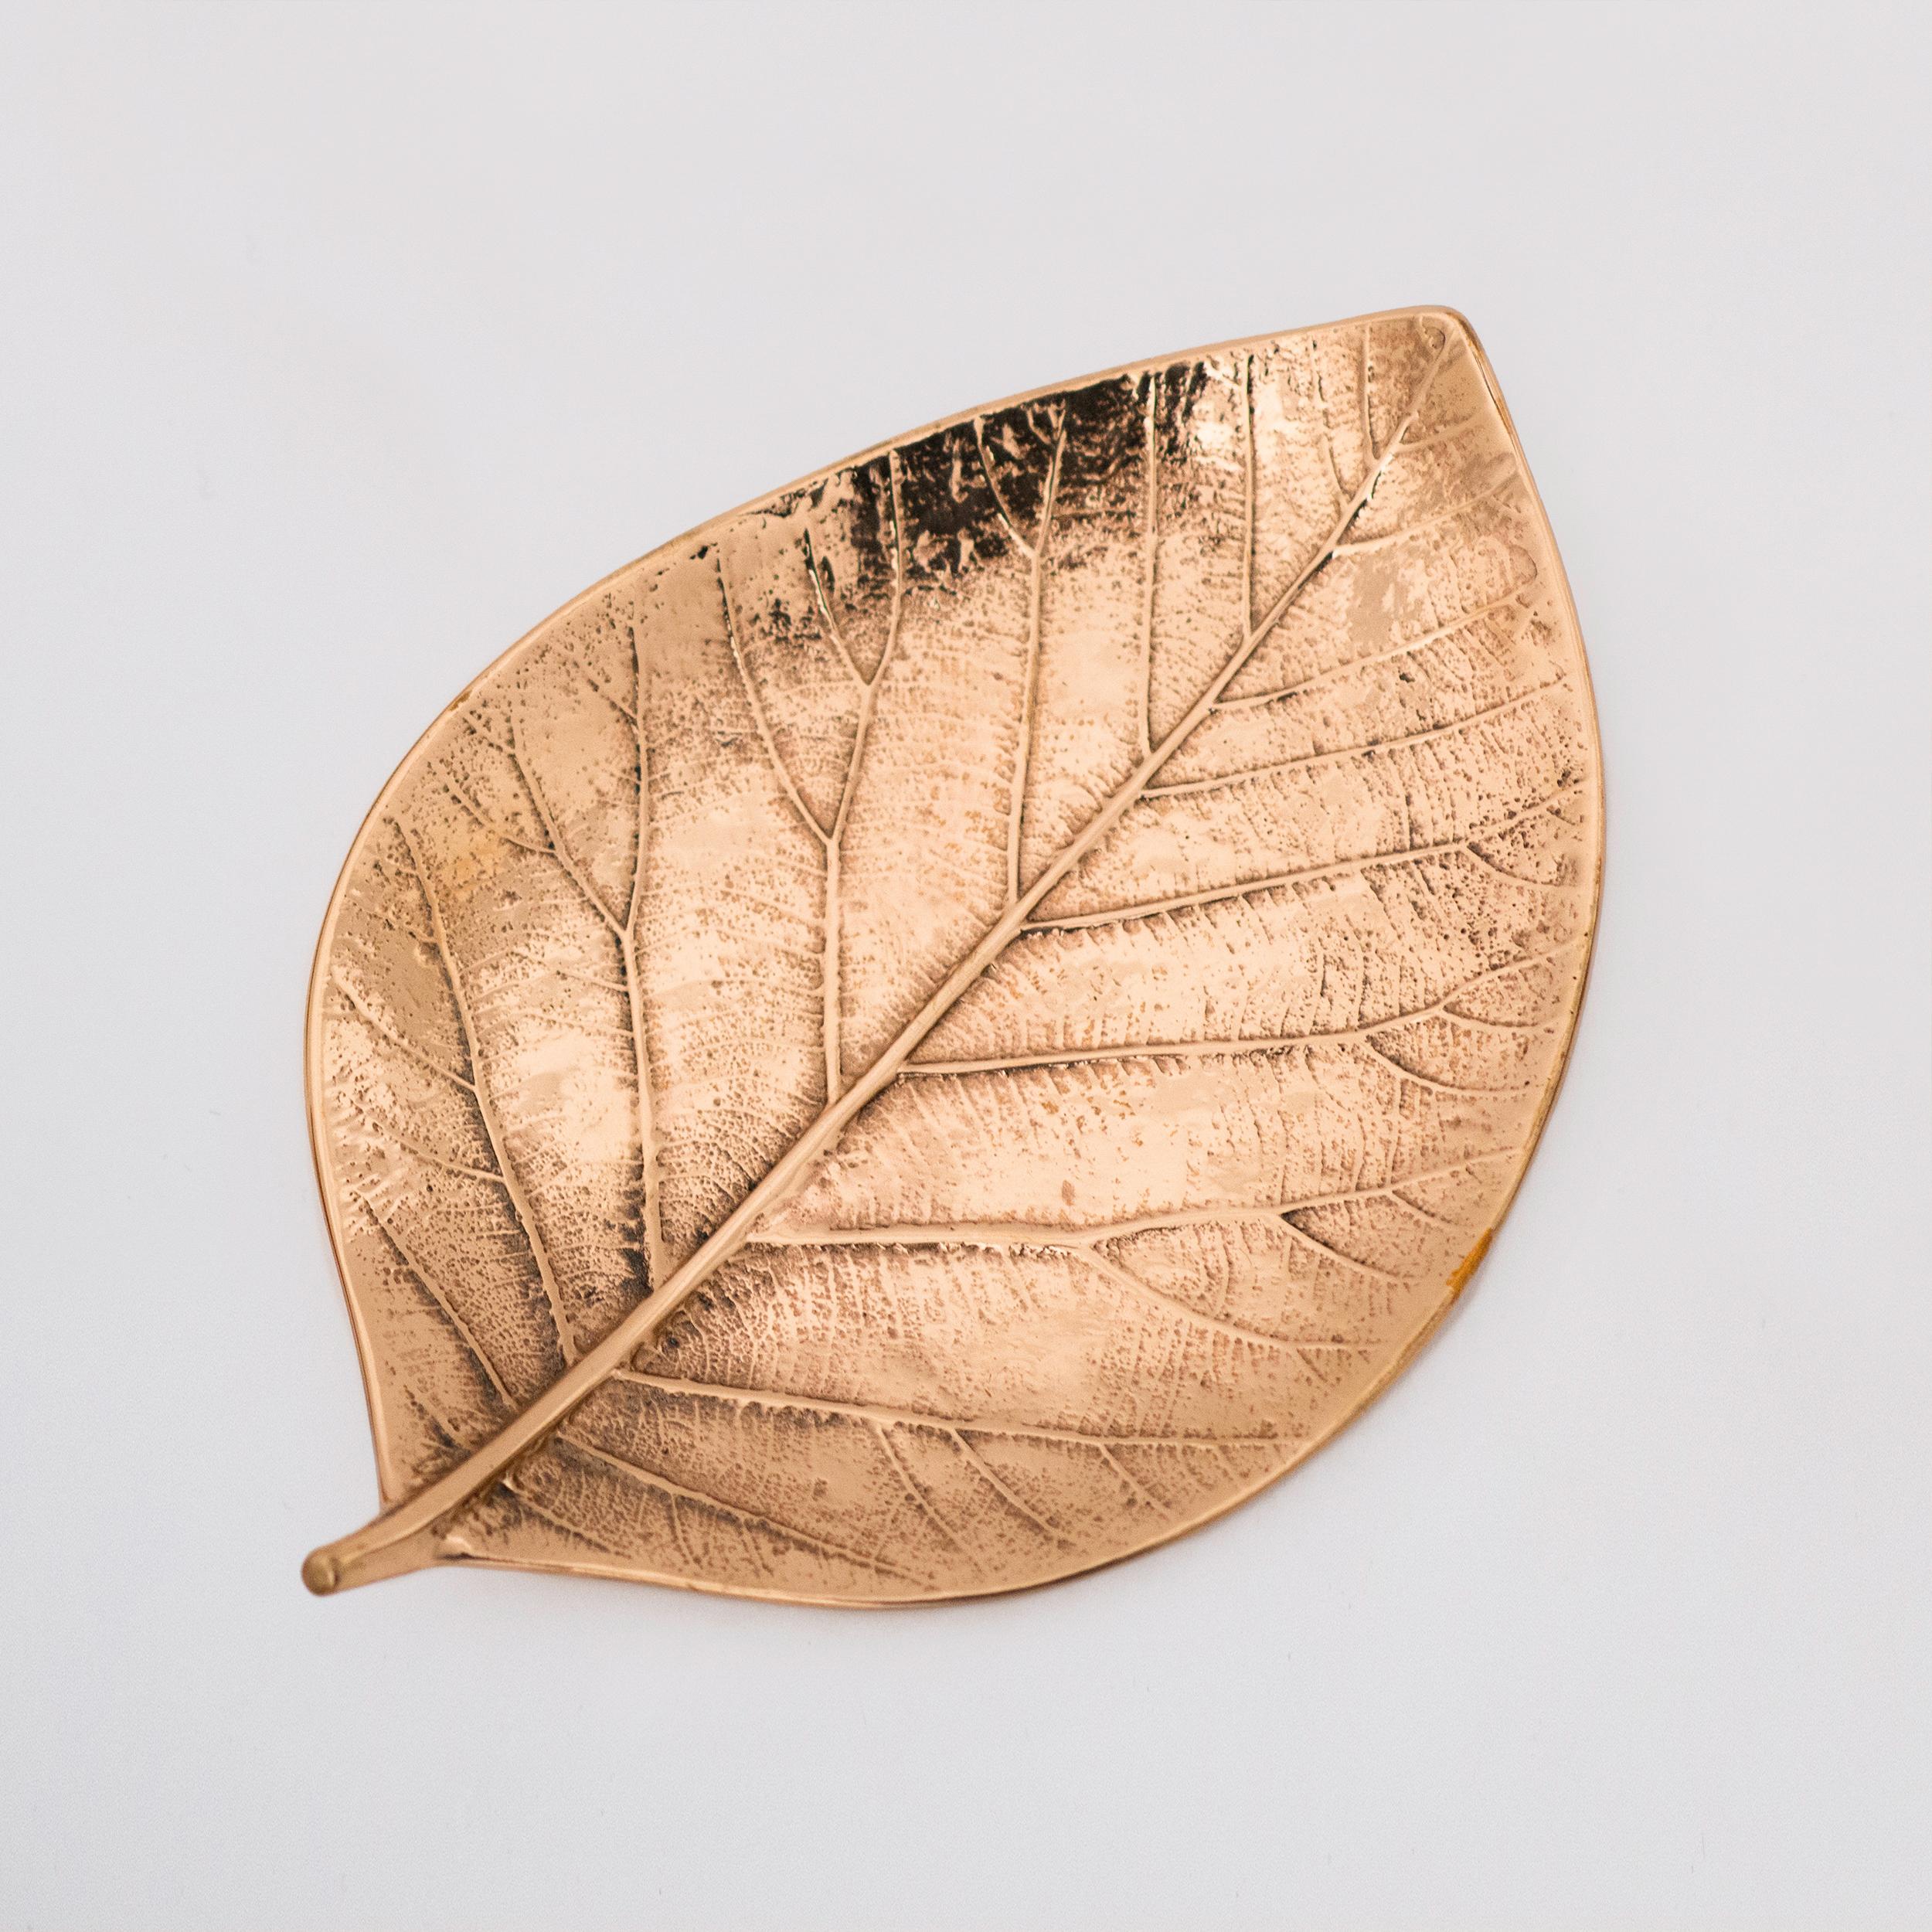 Chacune de ces splendides feuilles de bronze est fabriquée à la main, individuellement, avec un niveau de détail incroyable. Coulés selon des techniques très traditionnelles, ils sont polis pour restituer la finition brute de ce matériau noble et